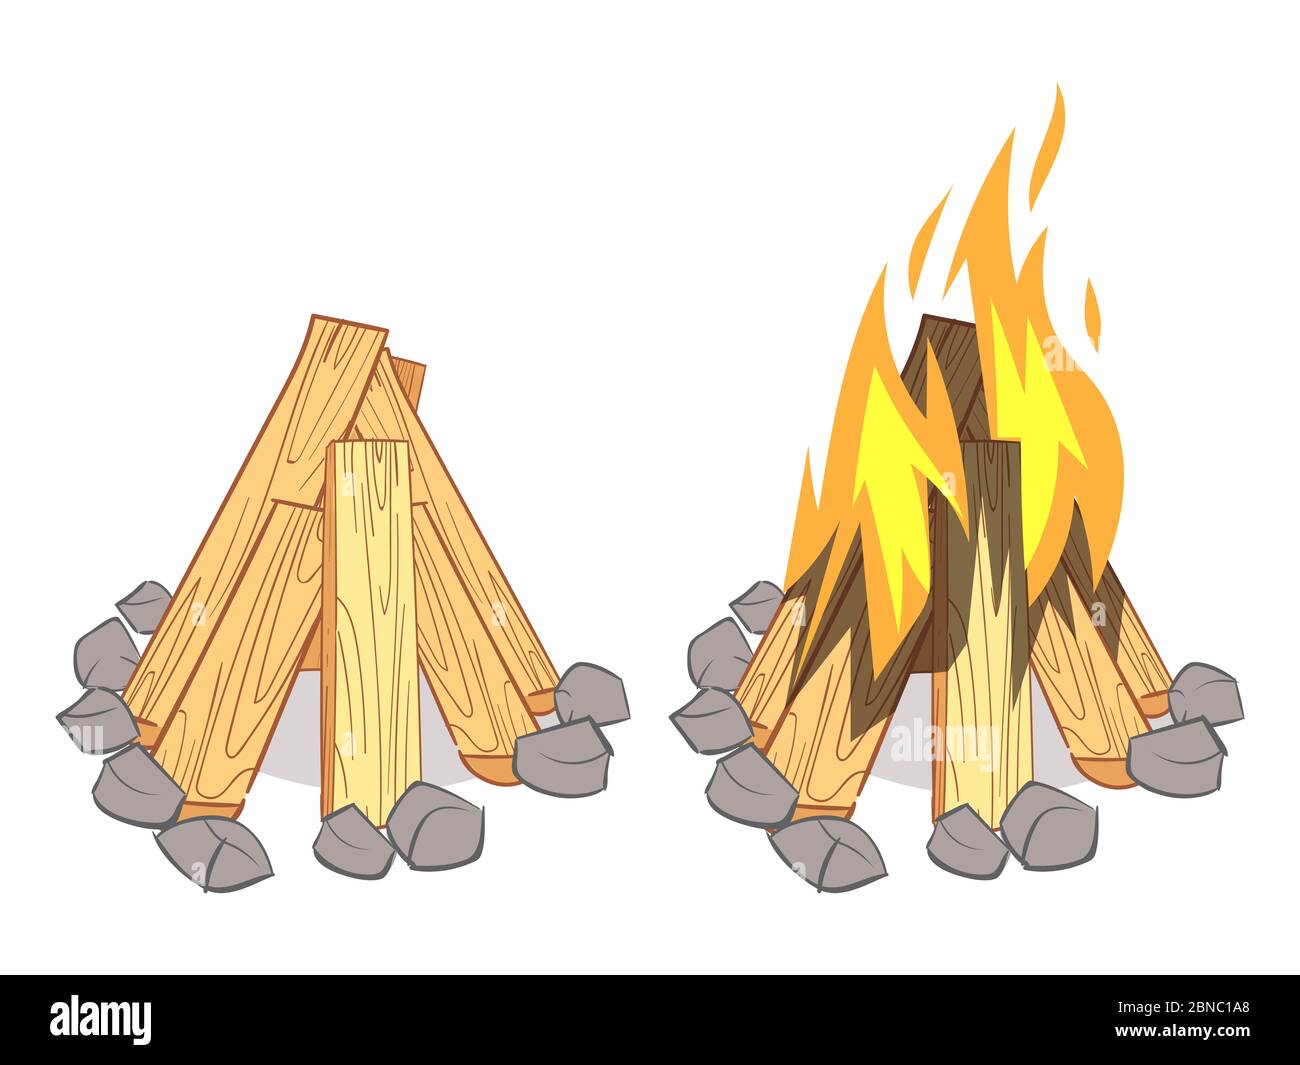 Holzstapel, Hartholz Brennholz, Holzstämme und Lagerfeuer im Freien mit gebrannten Baumstämmen auf weißem Hintergrund isoliert. Vektorgrafik Stock Vektor